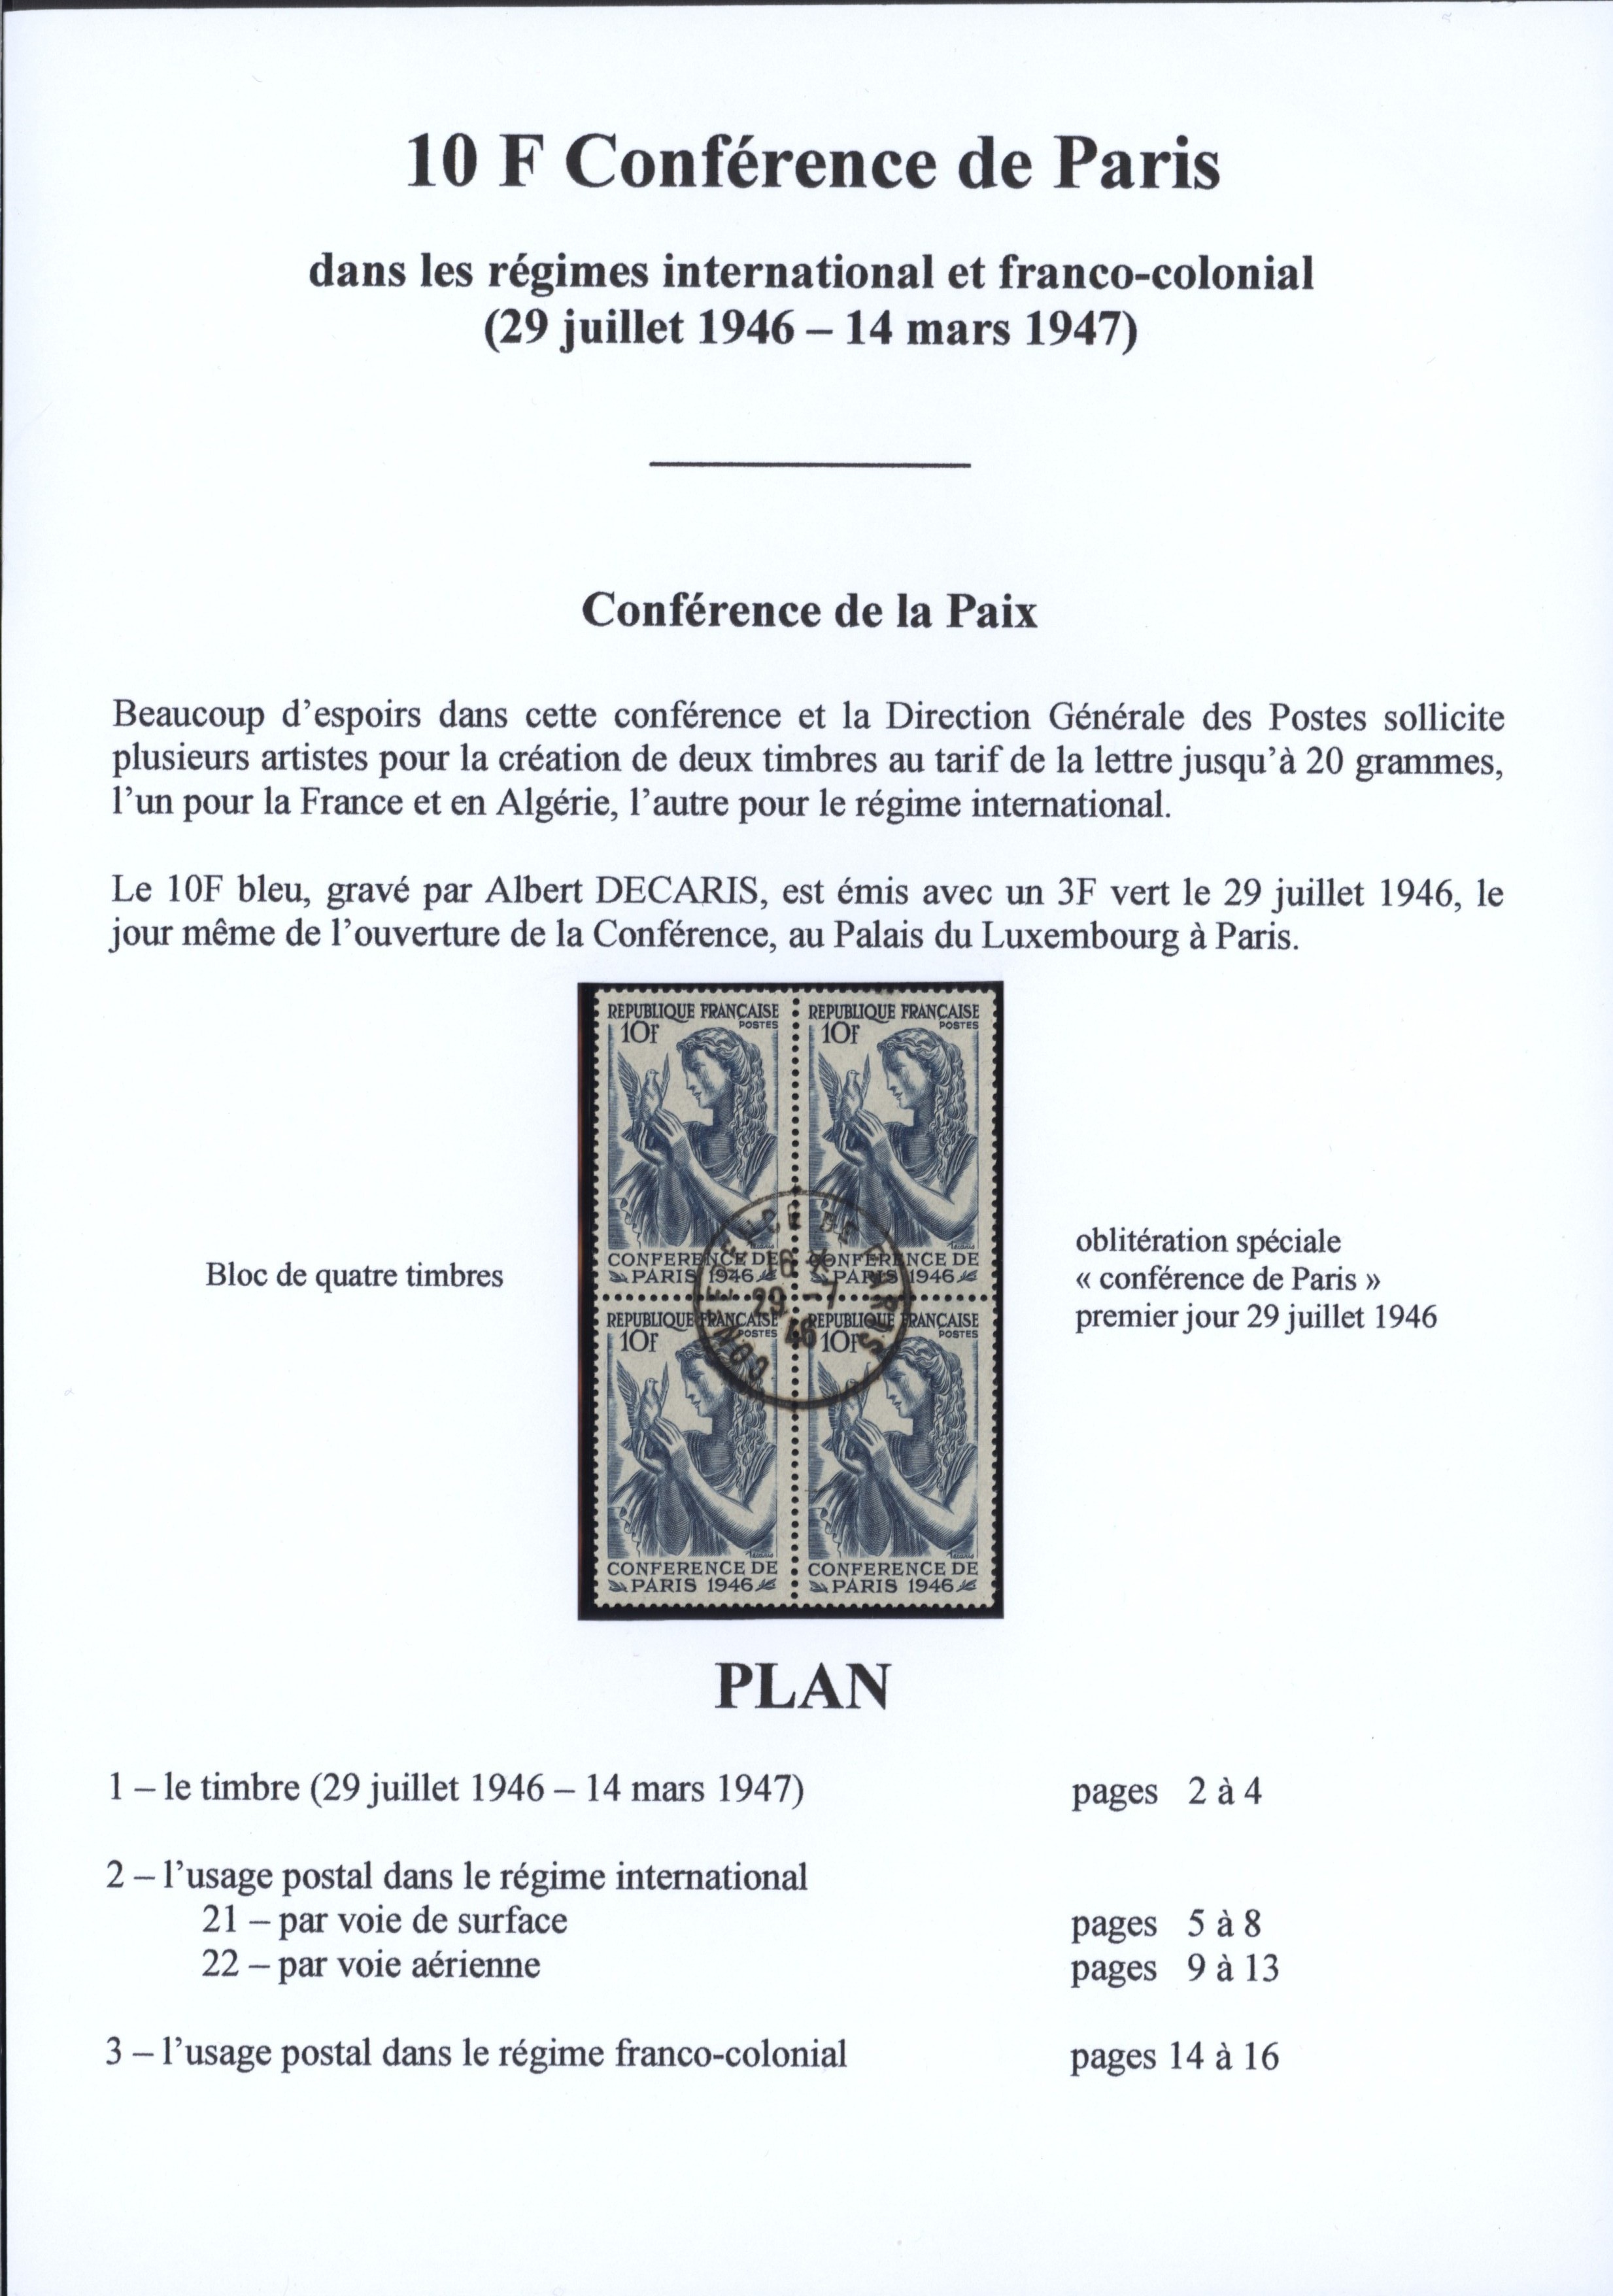 Le 10 F ���Conf��rence de Paris��� dans les r��gimes international et franco-colonial p. 1